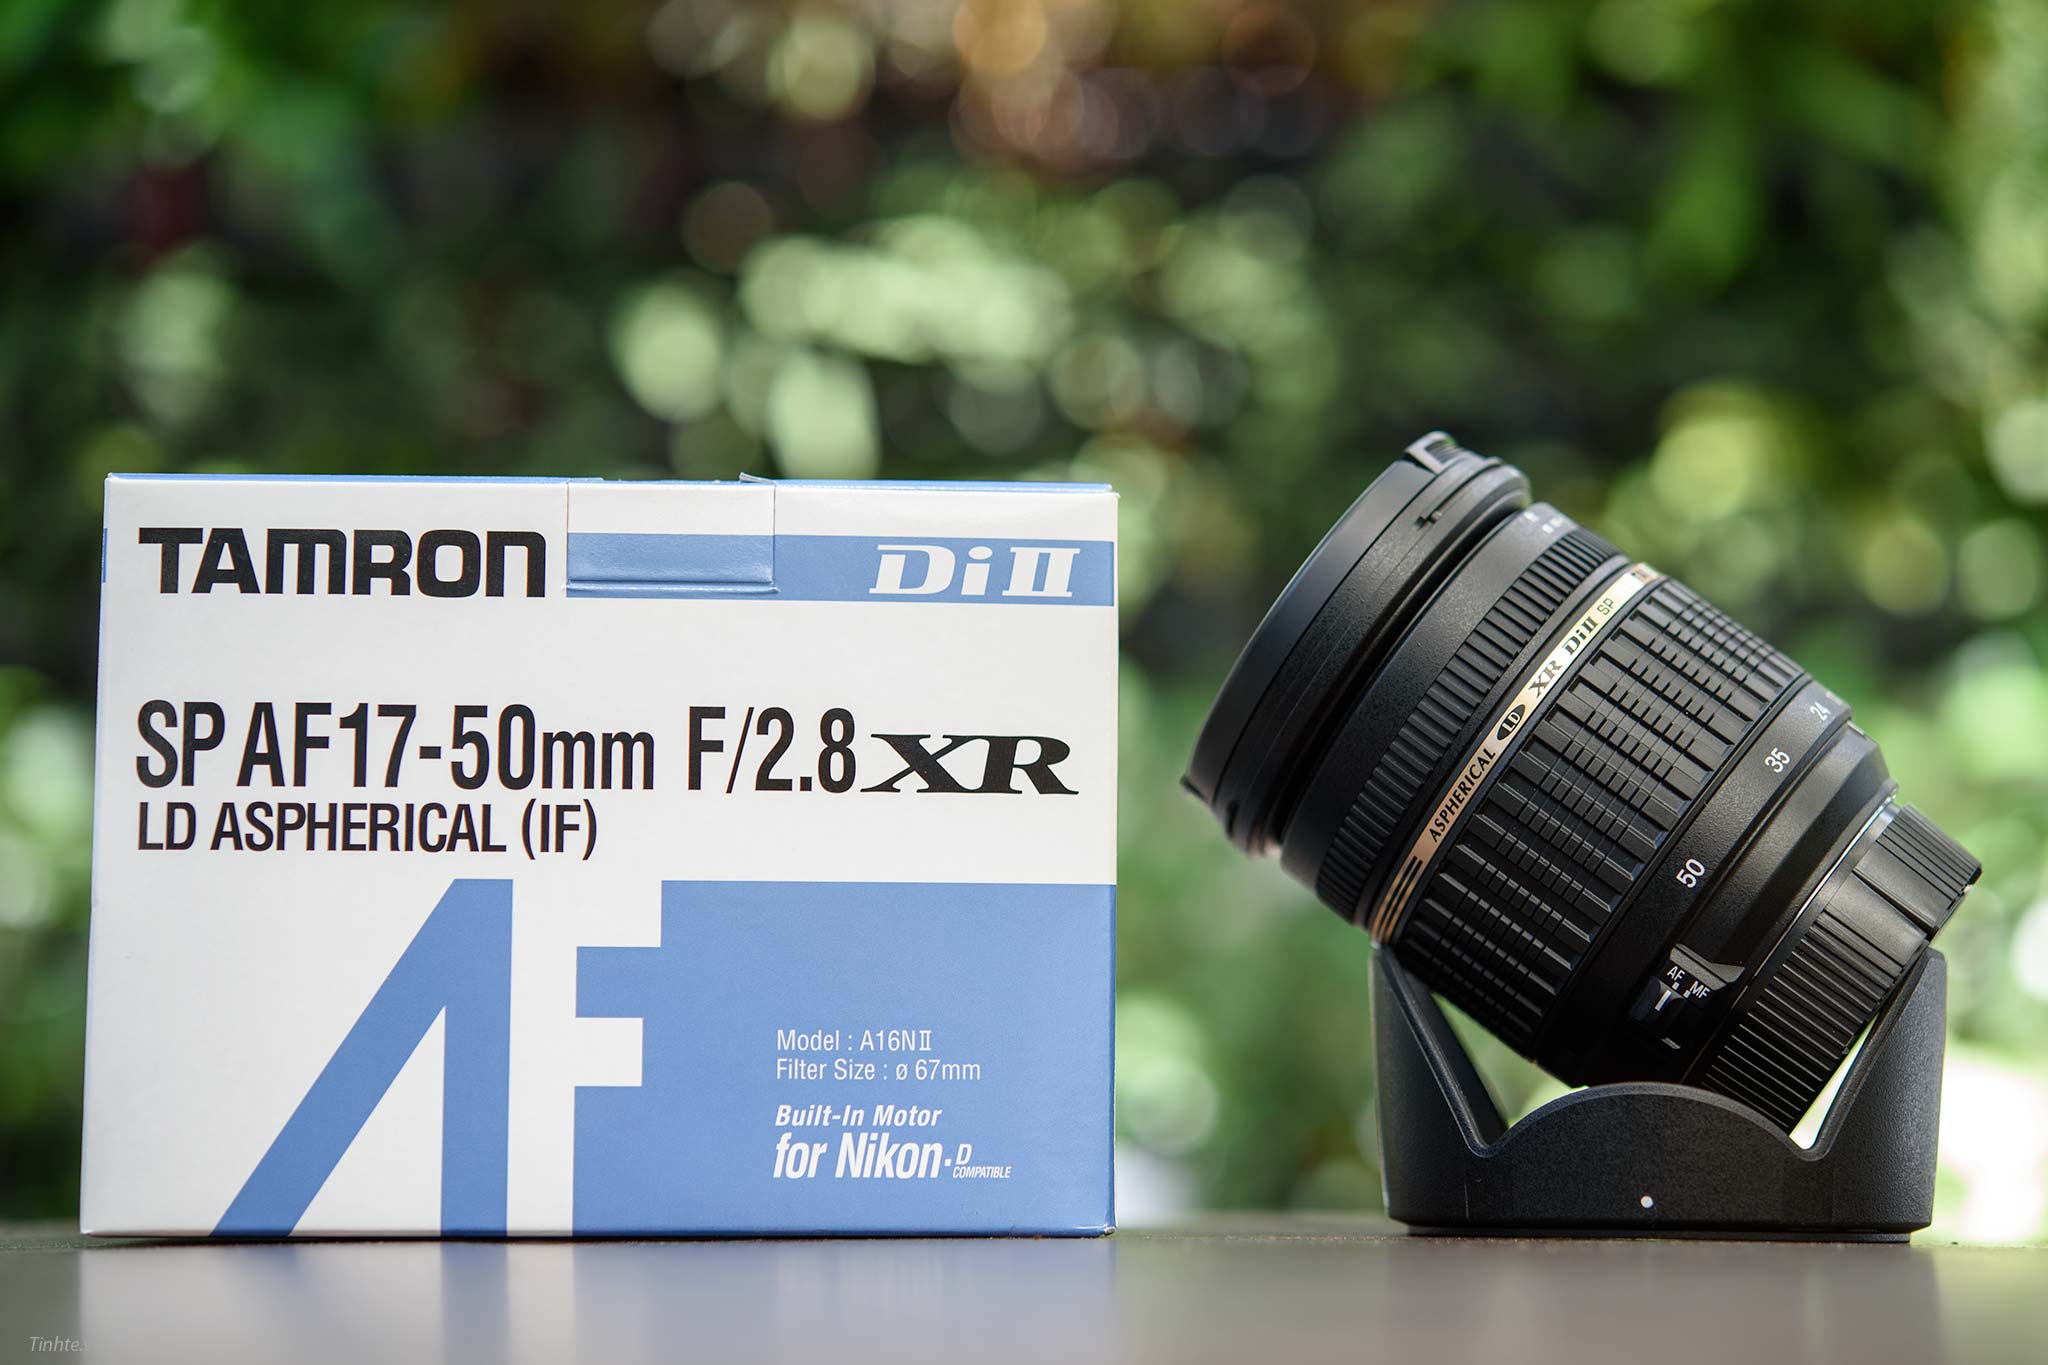 Trải nghiệm ống kính Tamron 17-50mm f2.8 non VC: Giải pháp hiệu quả cho người mới bắt đầu